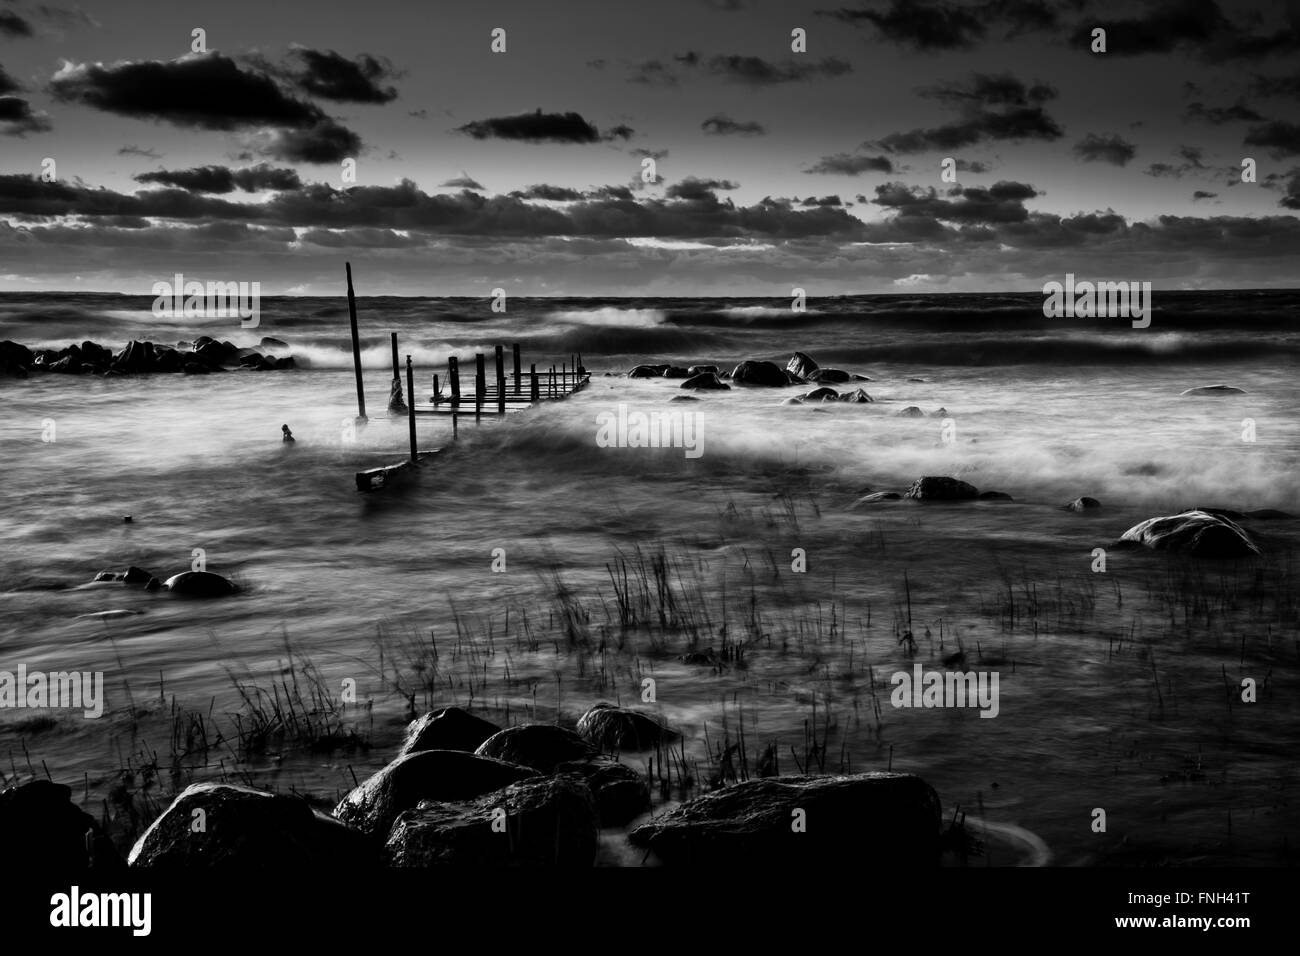 Vieux pont de mer agitée. Coucher du soleil sombre dans la plage de rochers. Environnement naturel et sauvage. Noir et blanc. La mer Baltique Banque D'Images